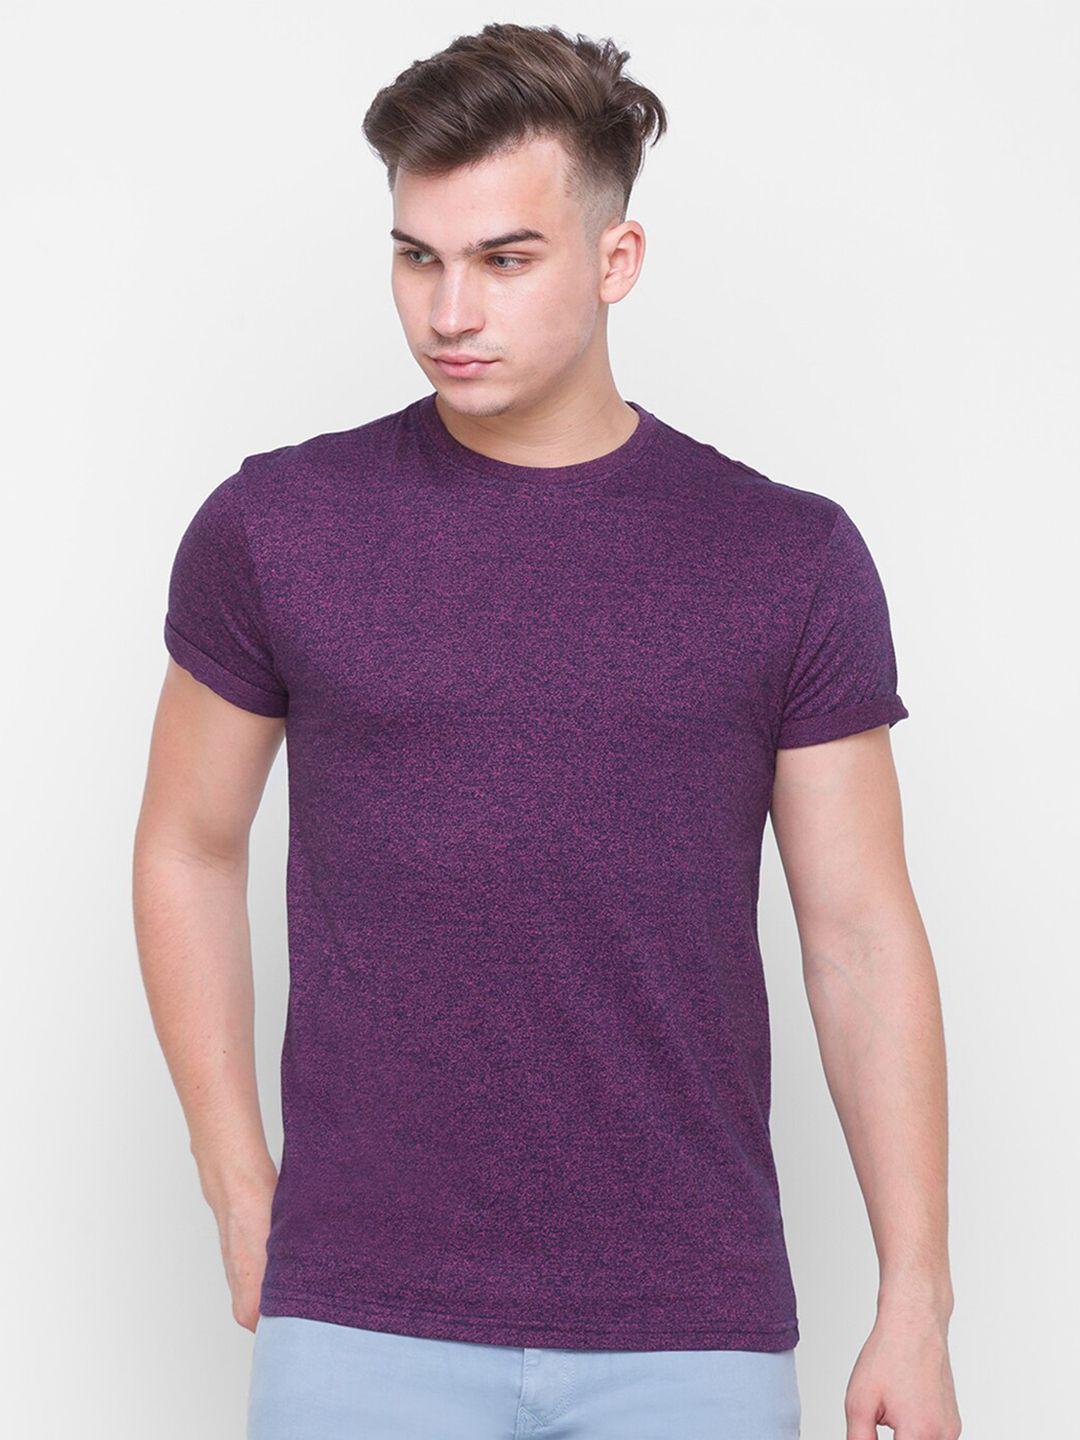 globus men purple solid cotton t-shirt